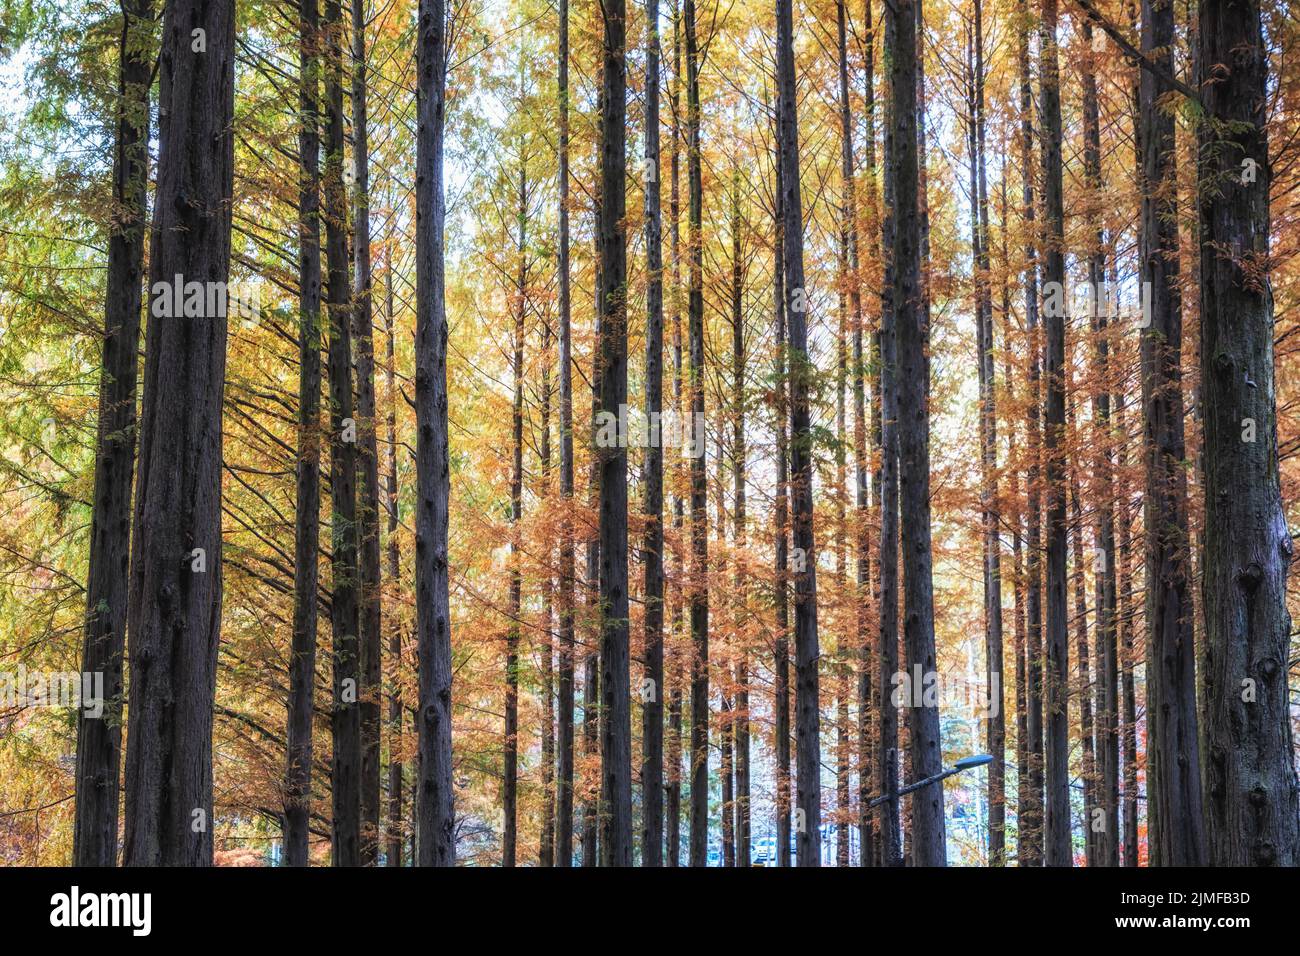 Metasequoia trees fall foliage Stock Photo